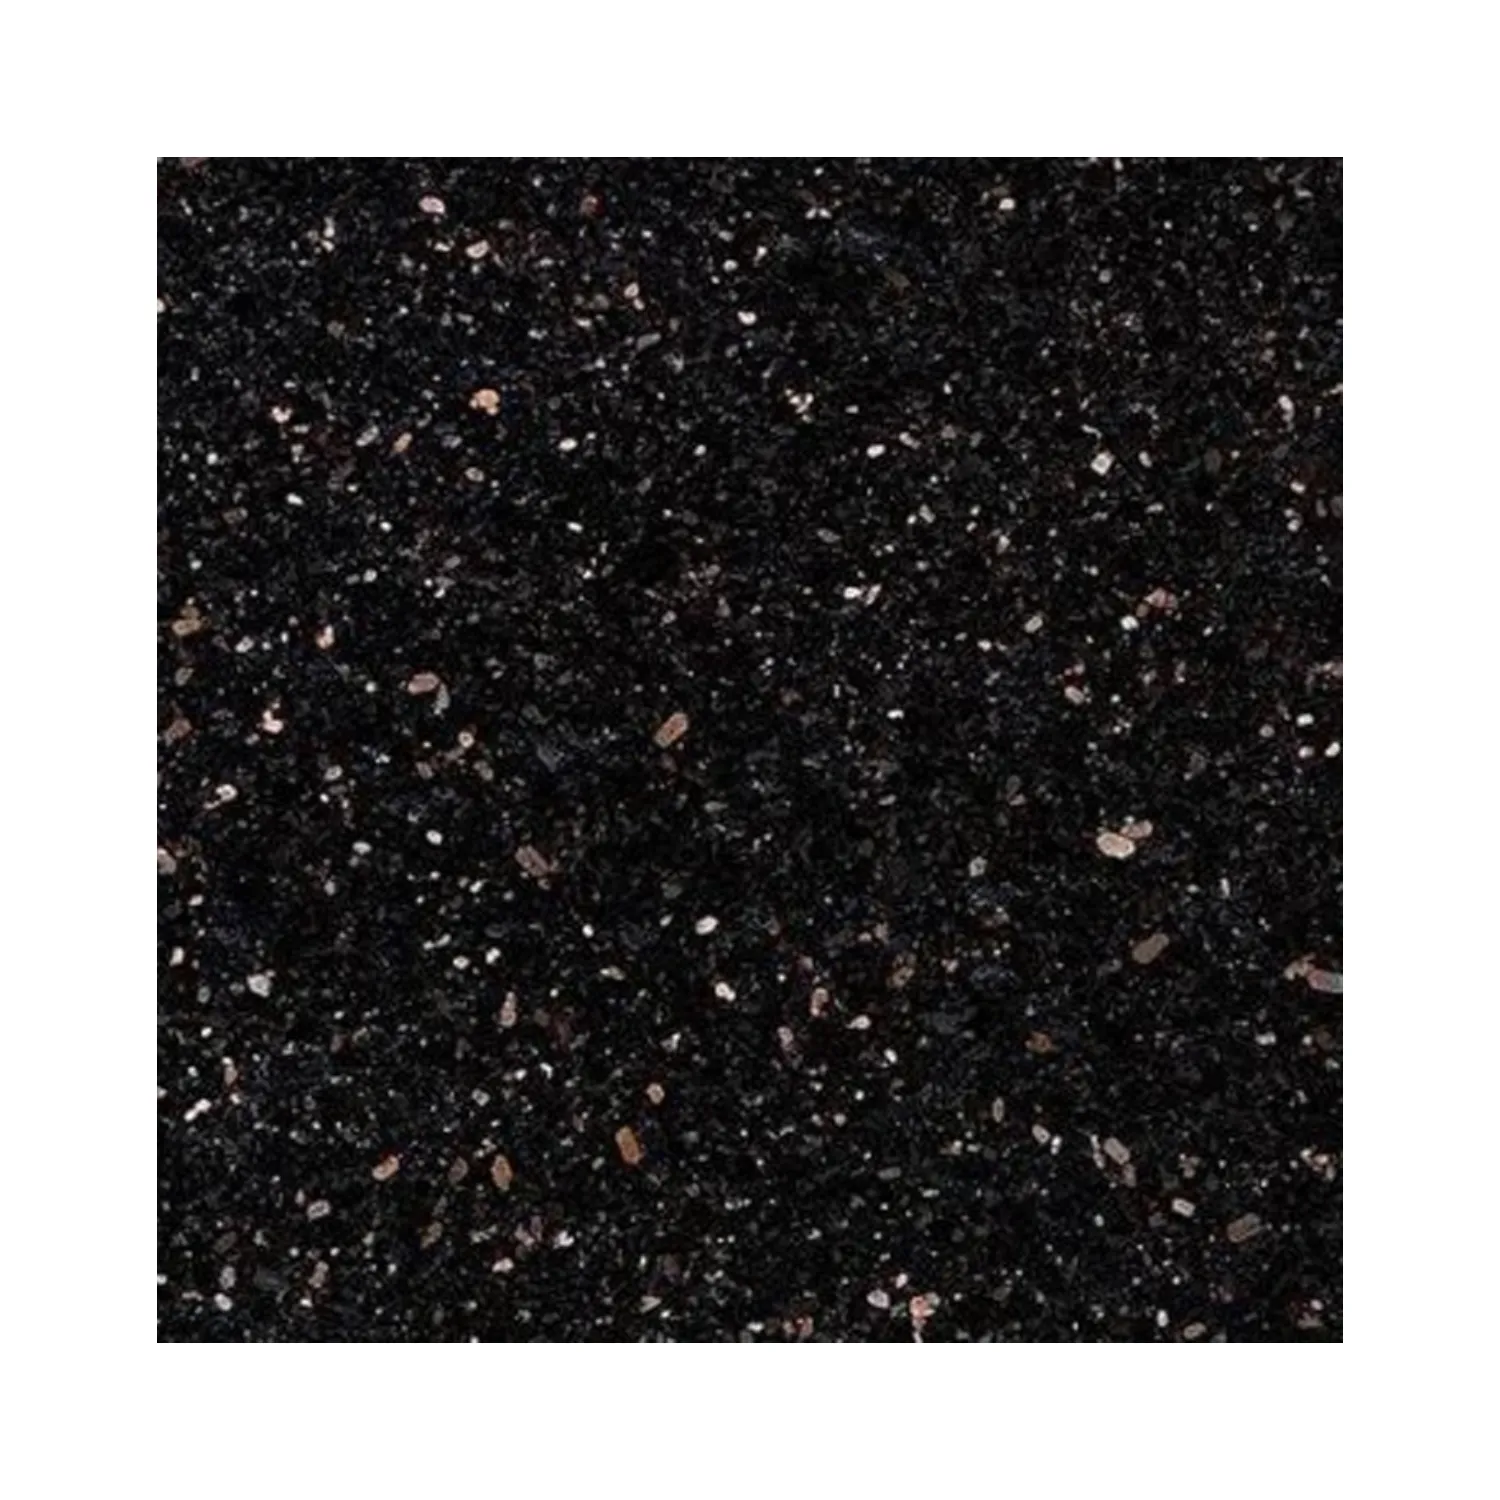 सस्ते काले ग्रेनाइट पत्थर पॉलिश प्राकृतिक ग्रेनाइट ब्लू के लिए रात में-पटिया Countertop